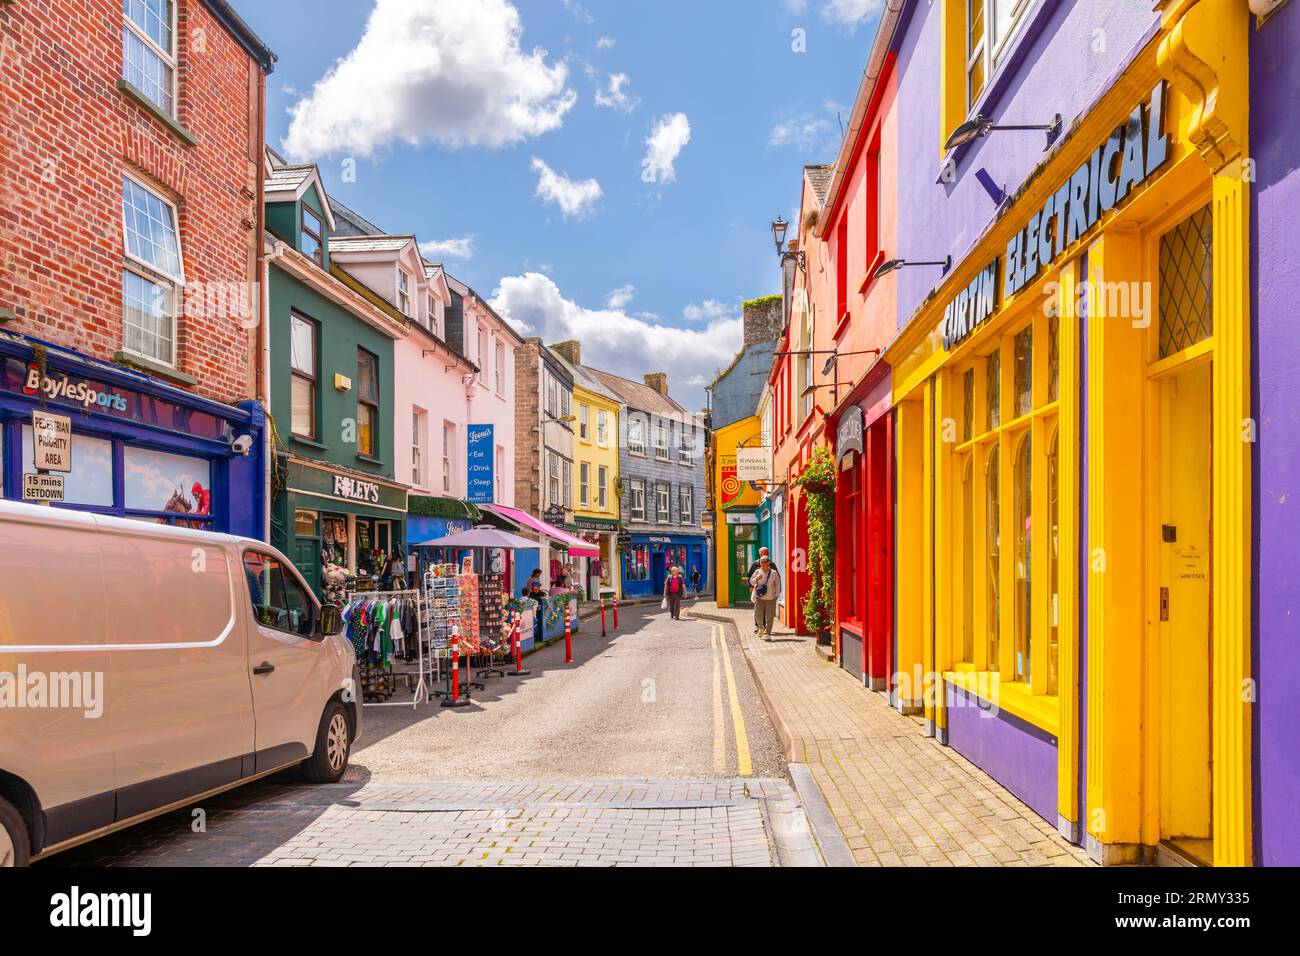 Rues étroites de boutiques aux couleurs vives et cafés dans le centre historique de la petite ville portuaire de pêche de Kinsale, dans le comté de Cork en Irlande. Banque D'Images